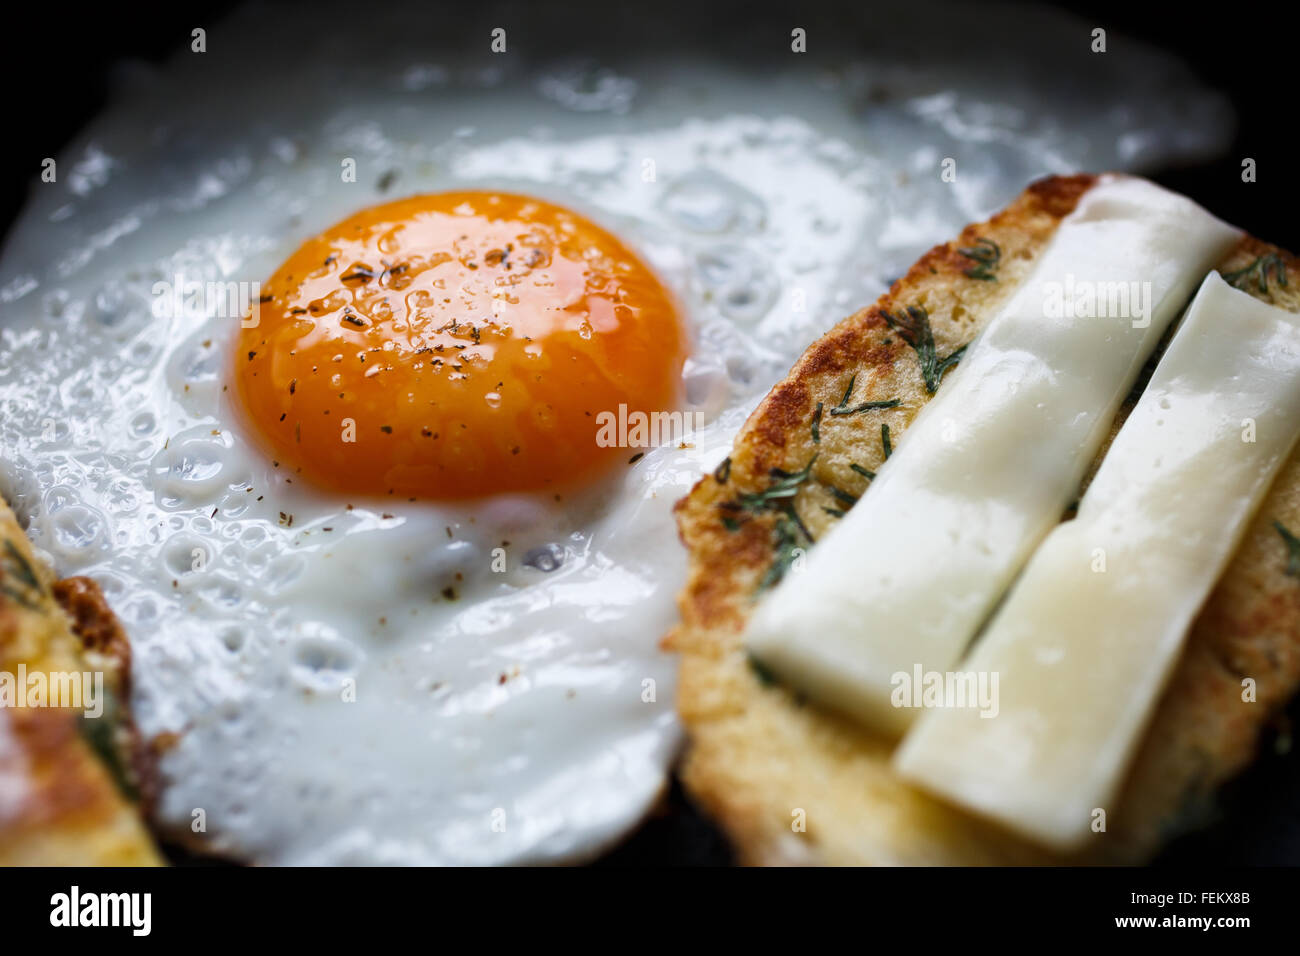 Spiegelei und Brot mit Käse auf der Pfanne Stockfotografie - Alamy